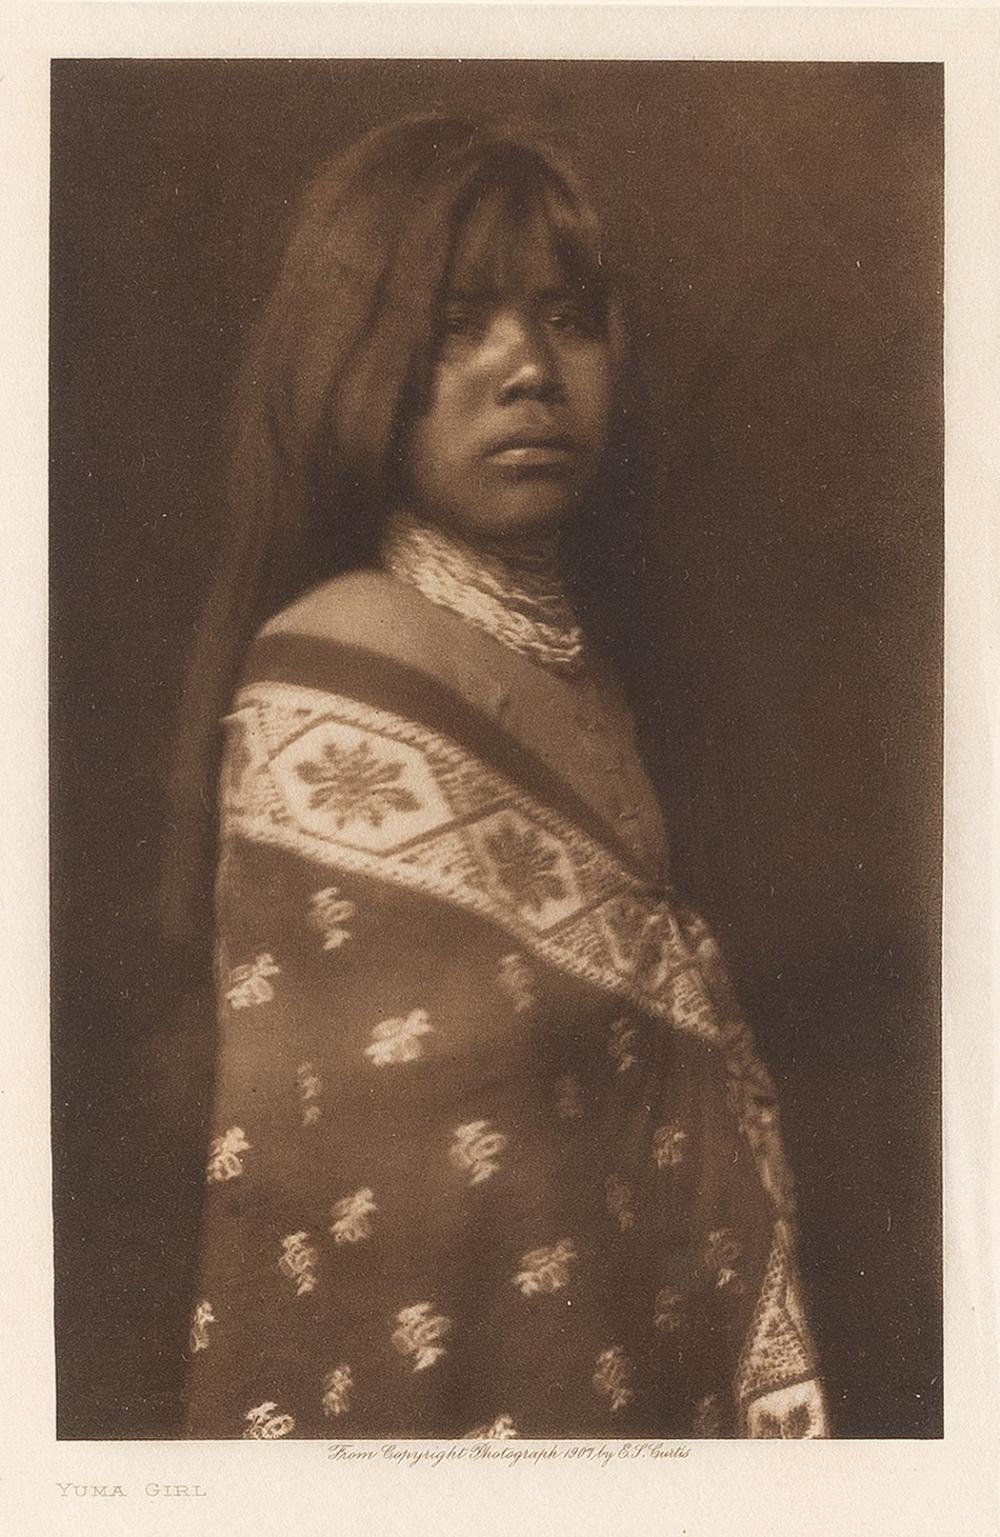 EDWARD S. CURTIS, YUMA GIRL, 1907Edward